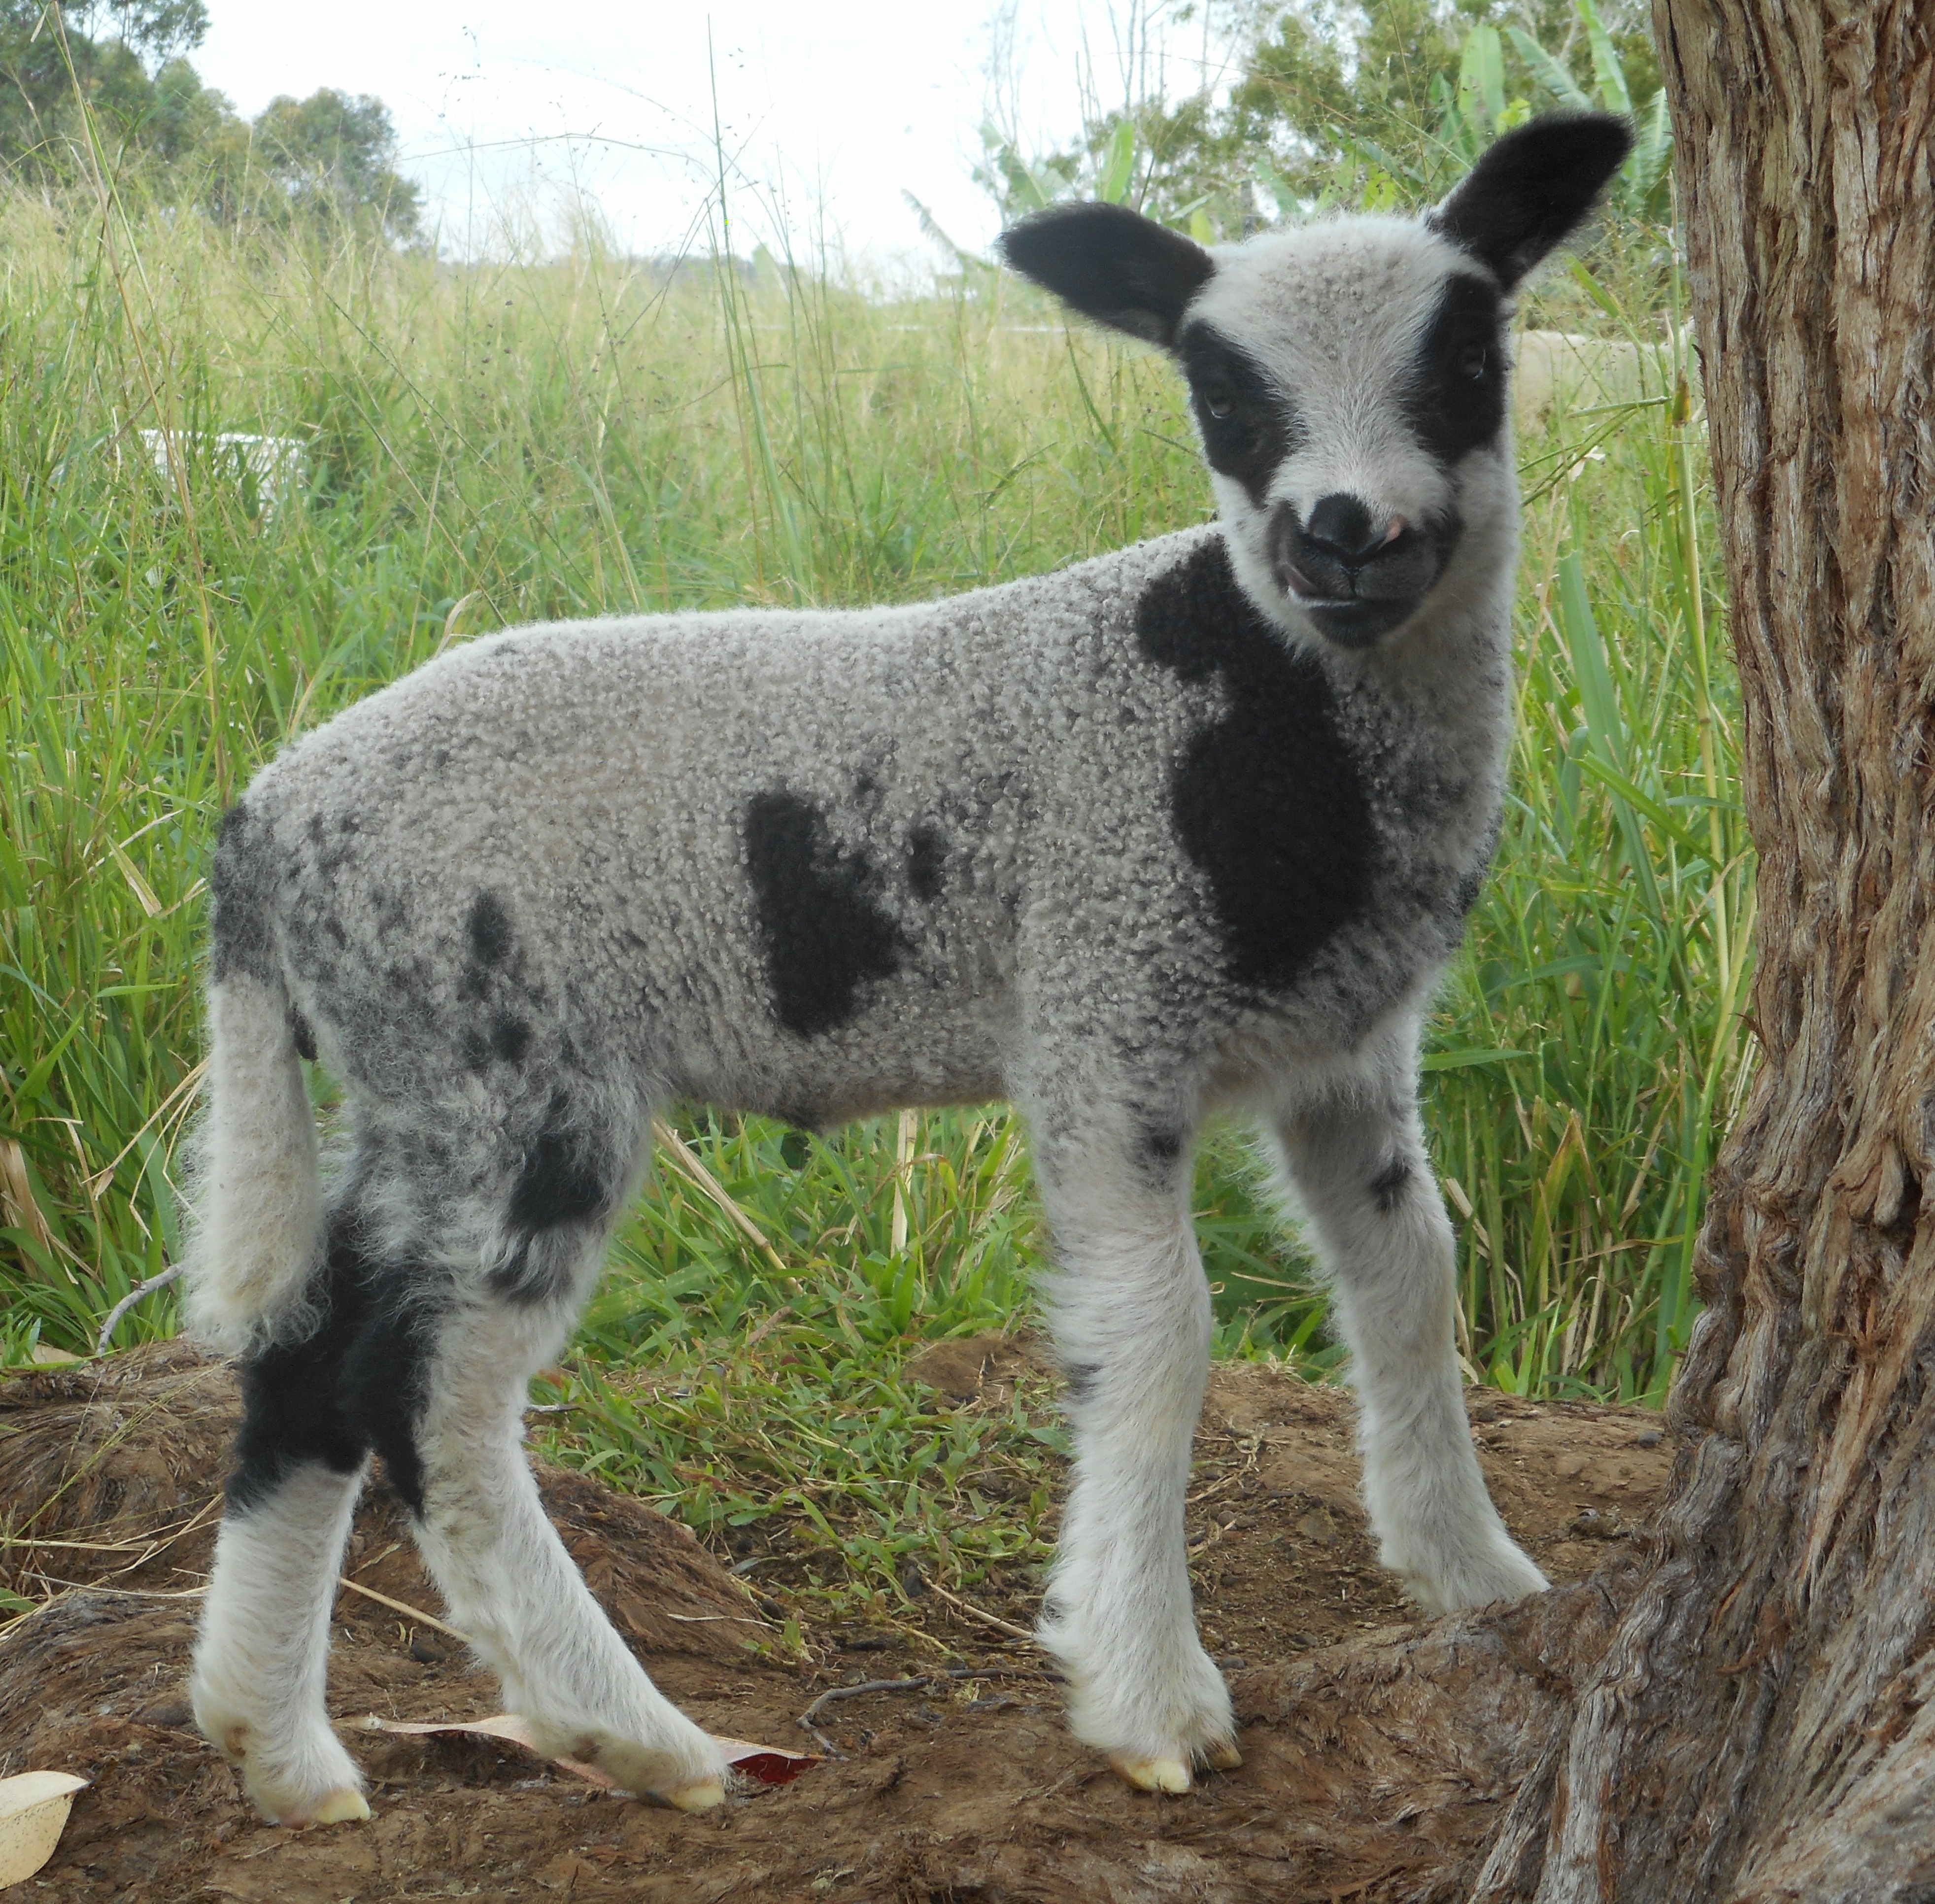 Spotted 2nd born ewe lamb